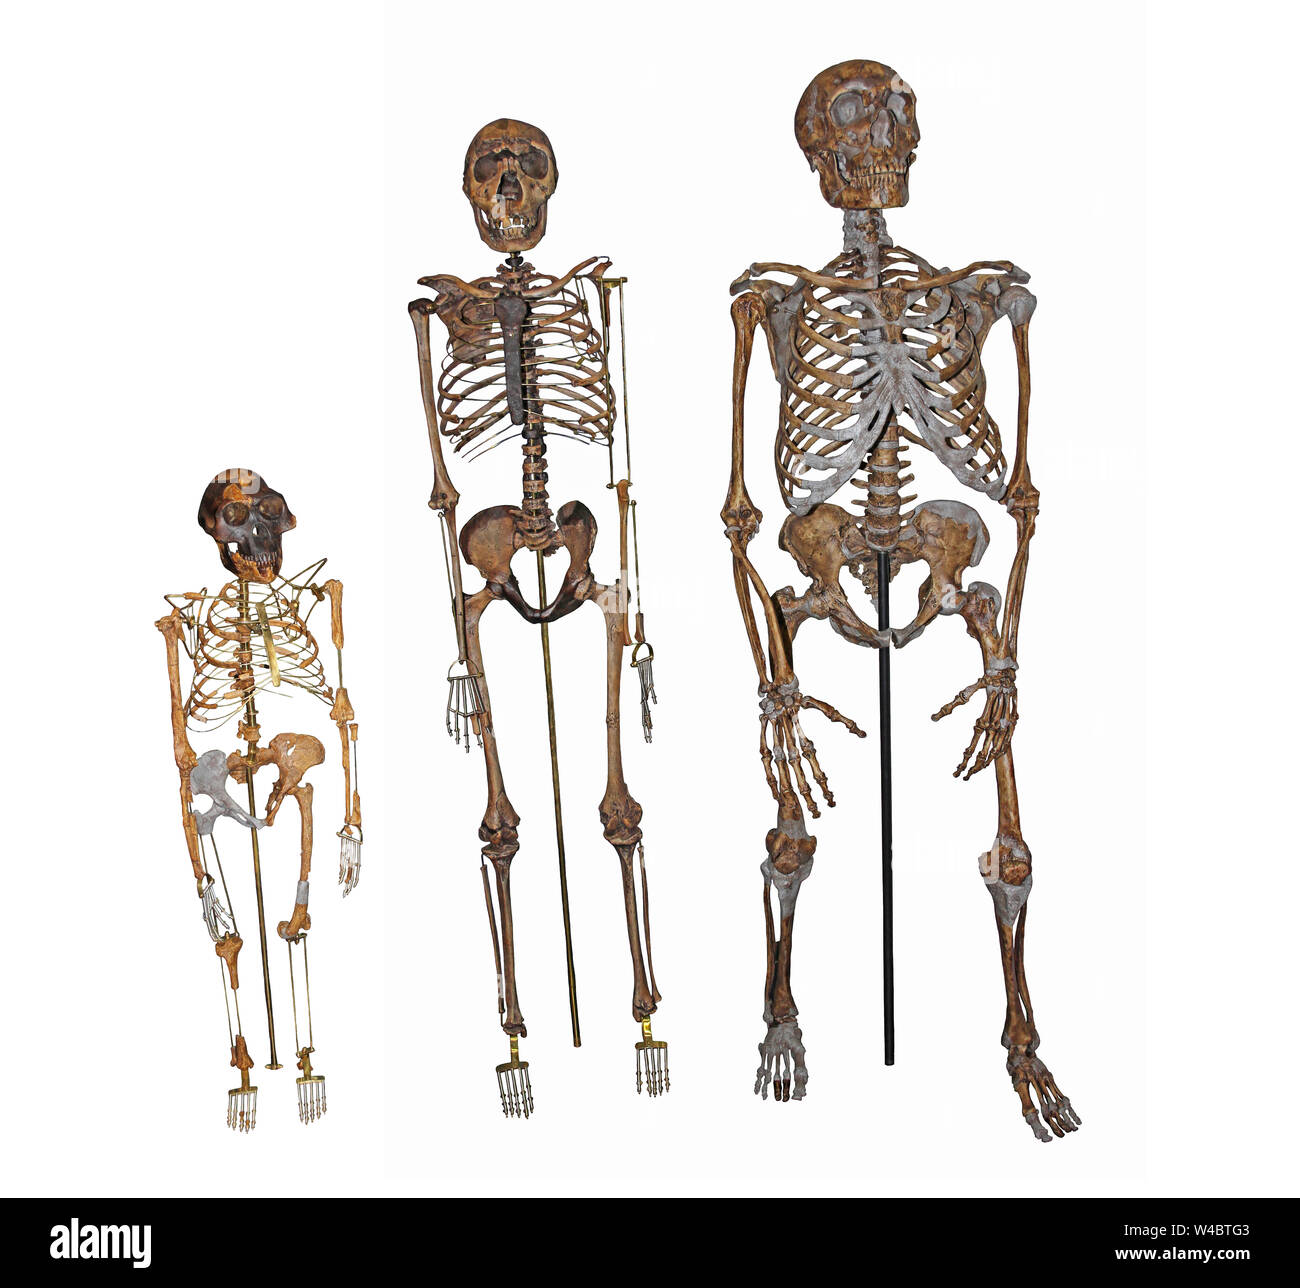 L'évolution humaine - Comparaison des squelettes de 'Lucy' Australopithecus afarensis, 'Nariokotome Boy' Homo ergaster et l'homme de Neandertal Banque D'Images